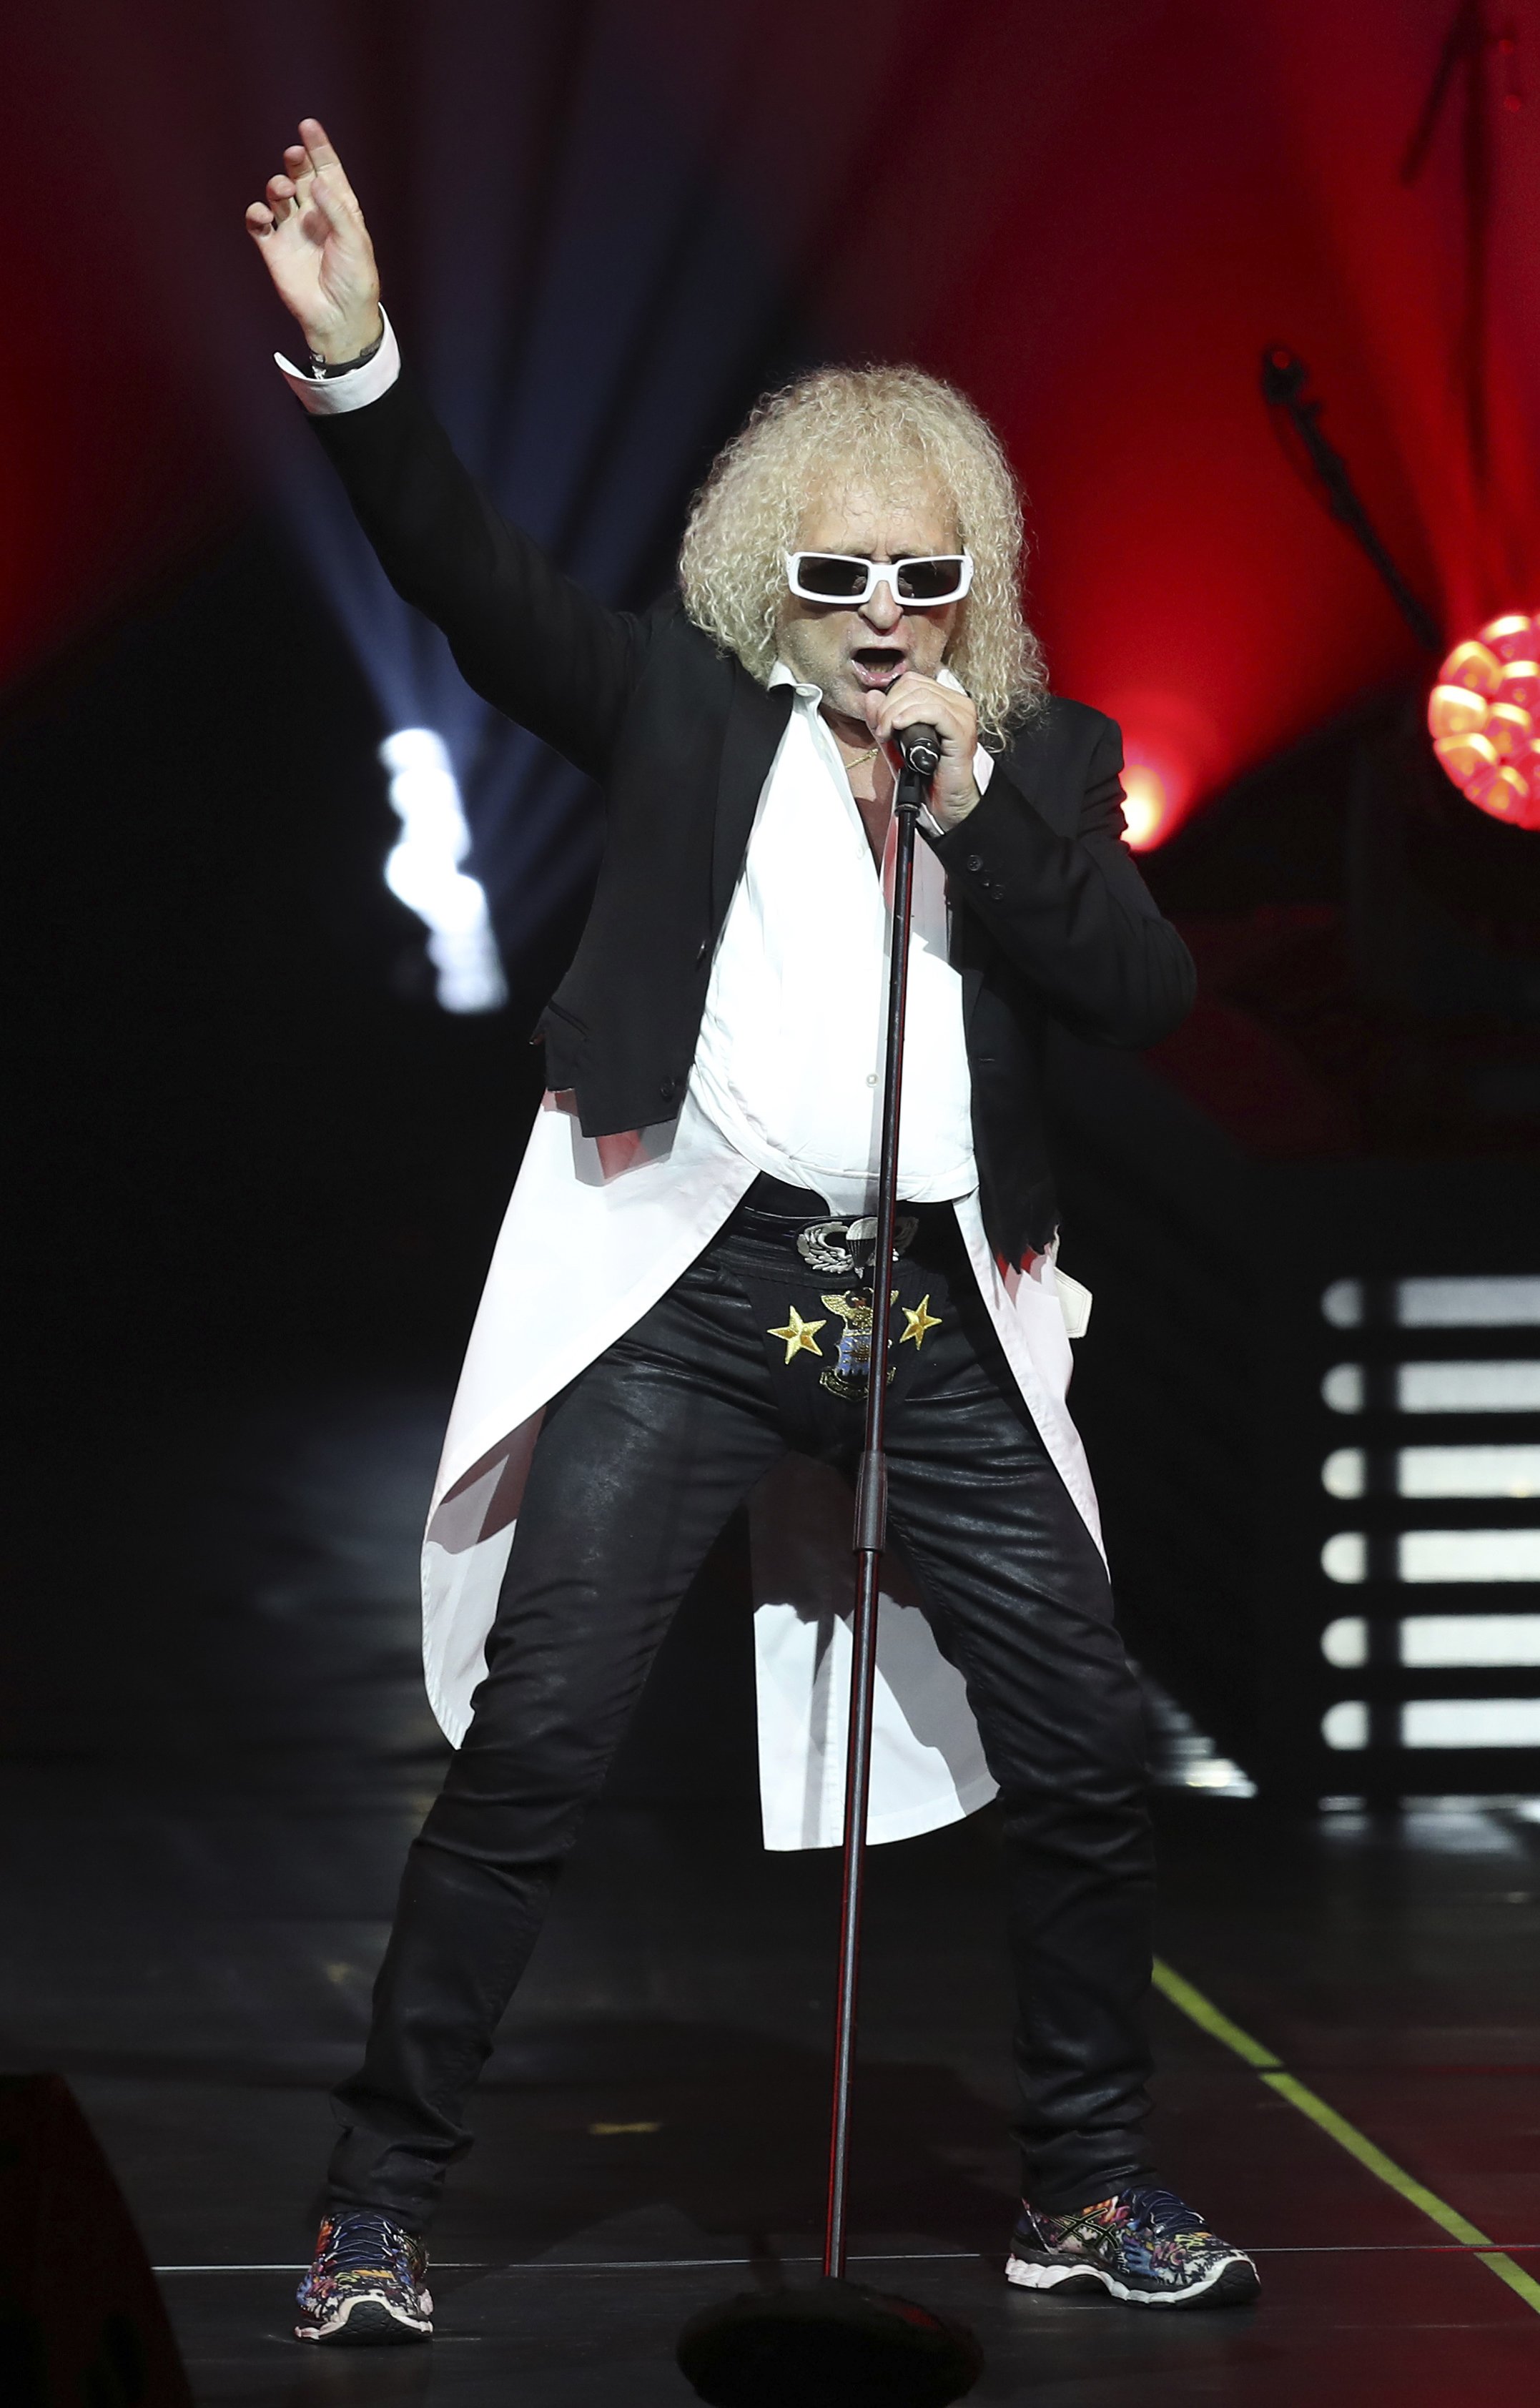 Le chanteur Michel Polnareff sur scène.| Photo : Getty Images